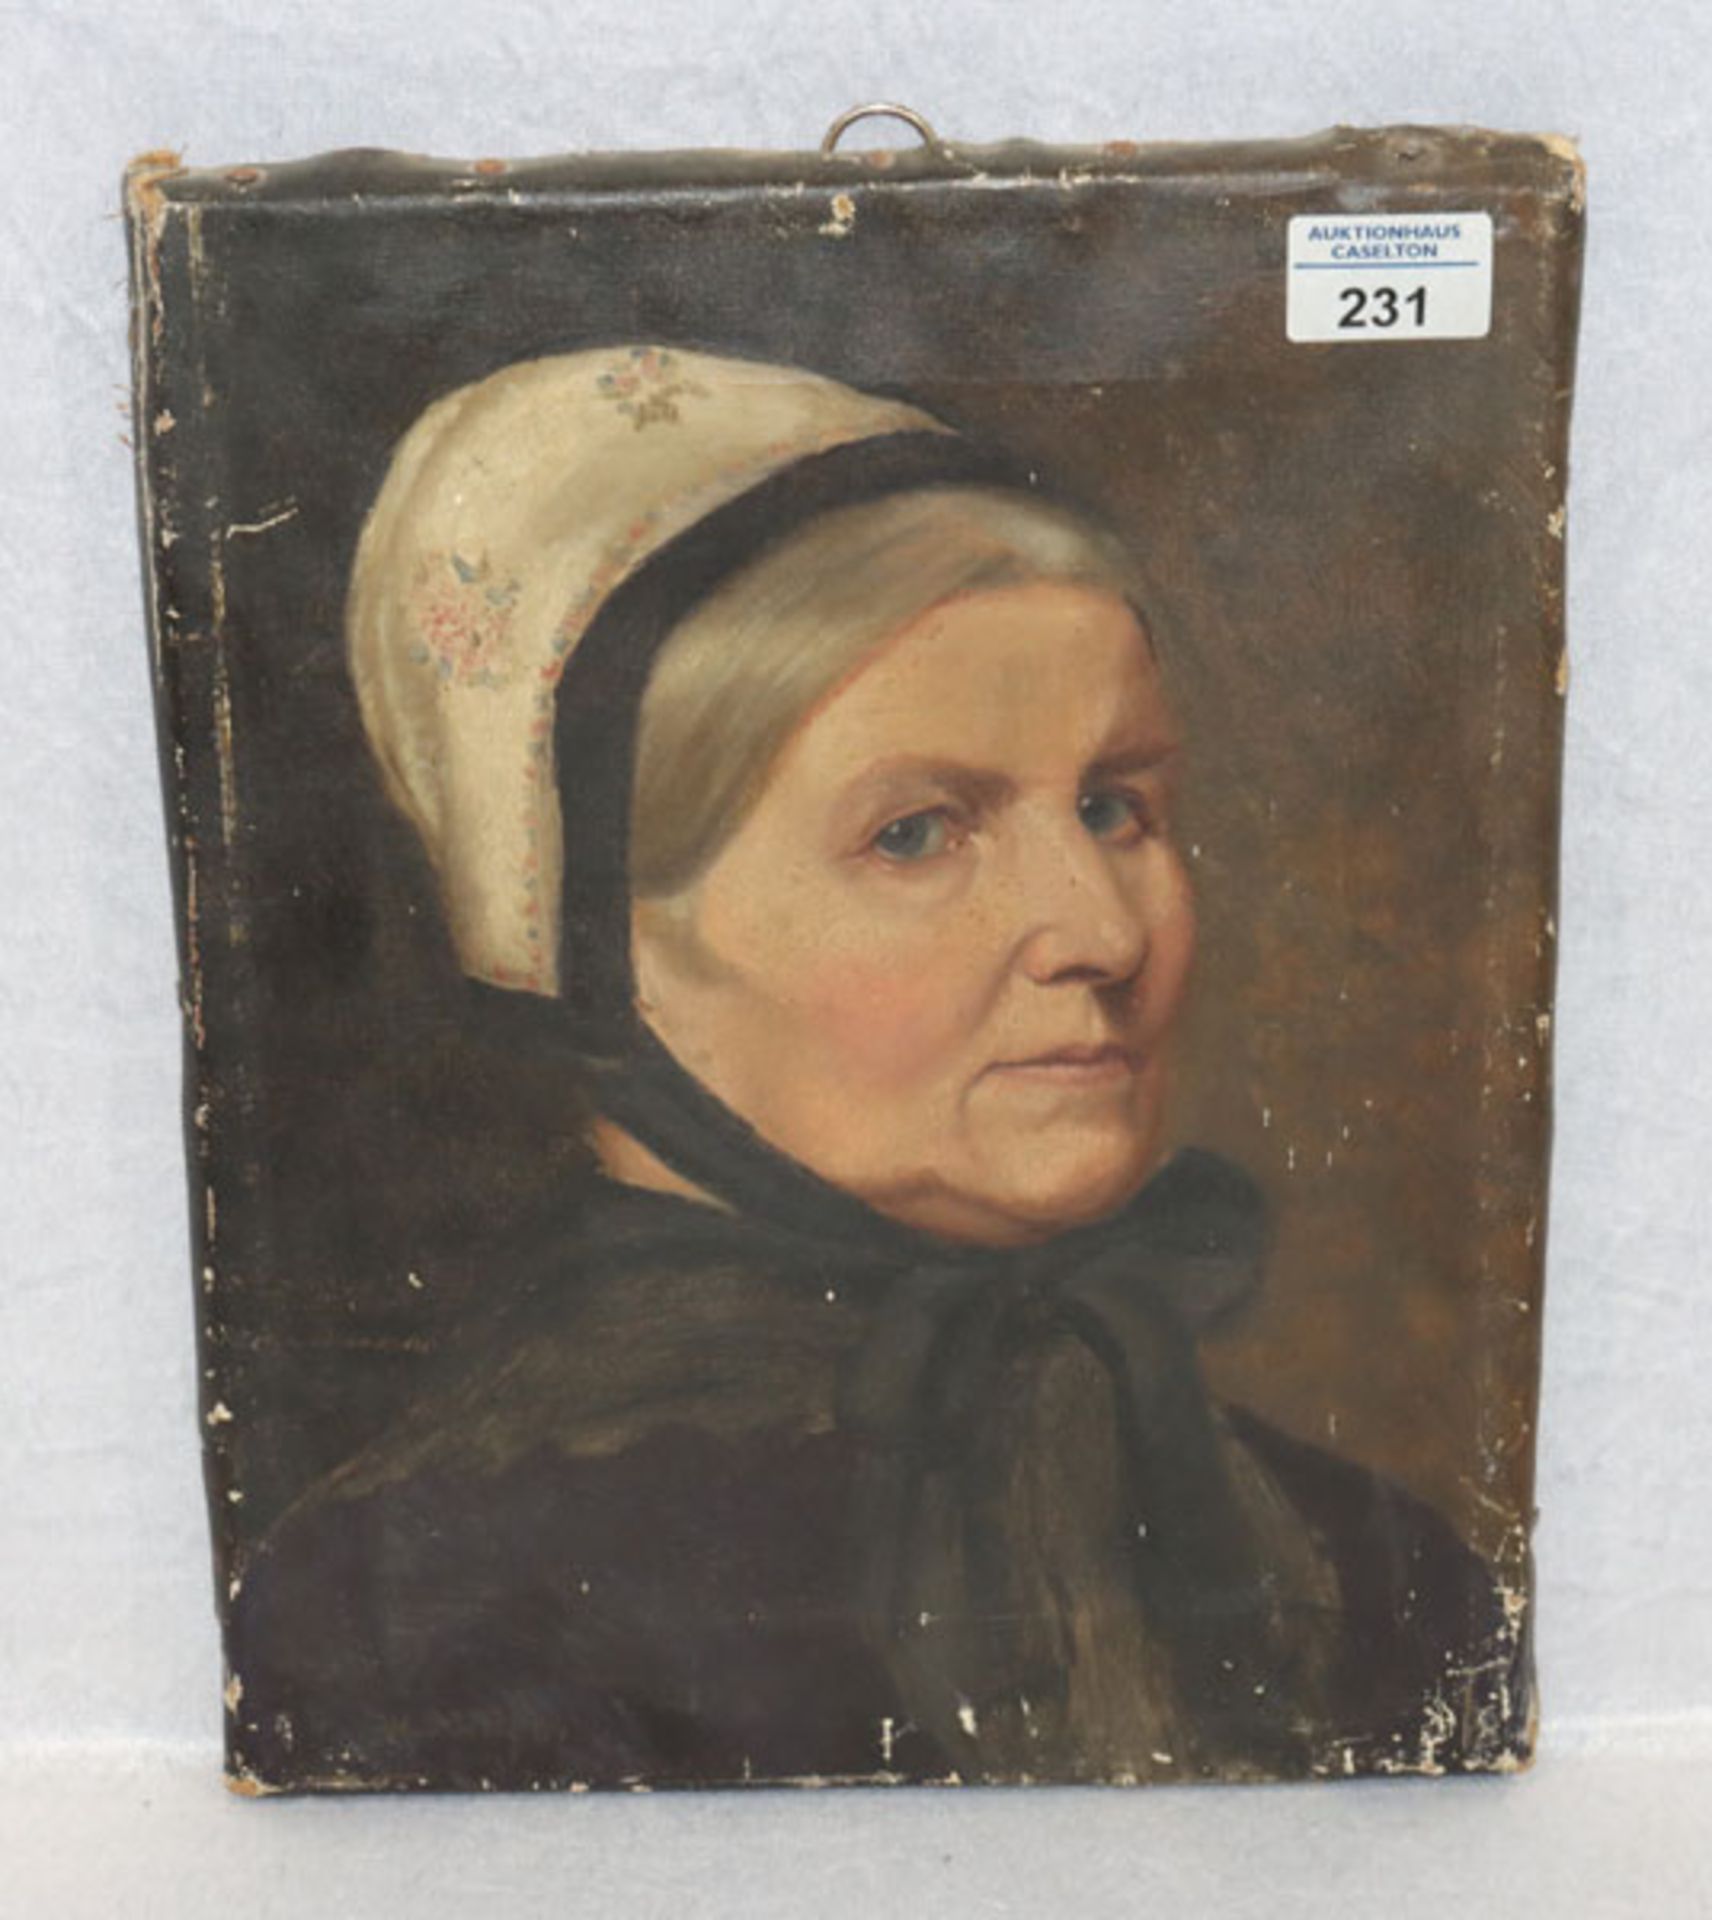 Gemälde ÖL/LW 'Damenbildnis', undeutlich signiert, datiert 84, Bildoberfläche stark beschädigt und